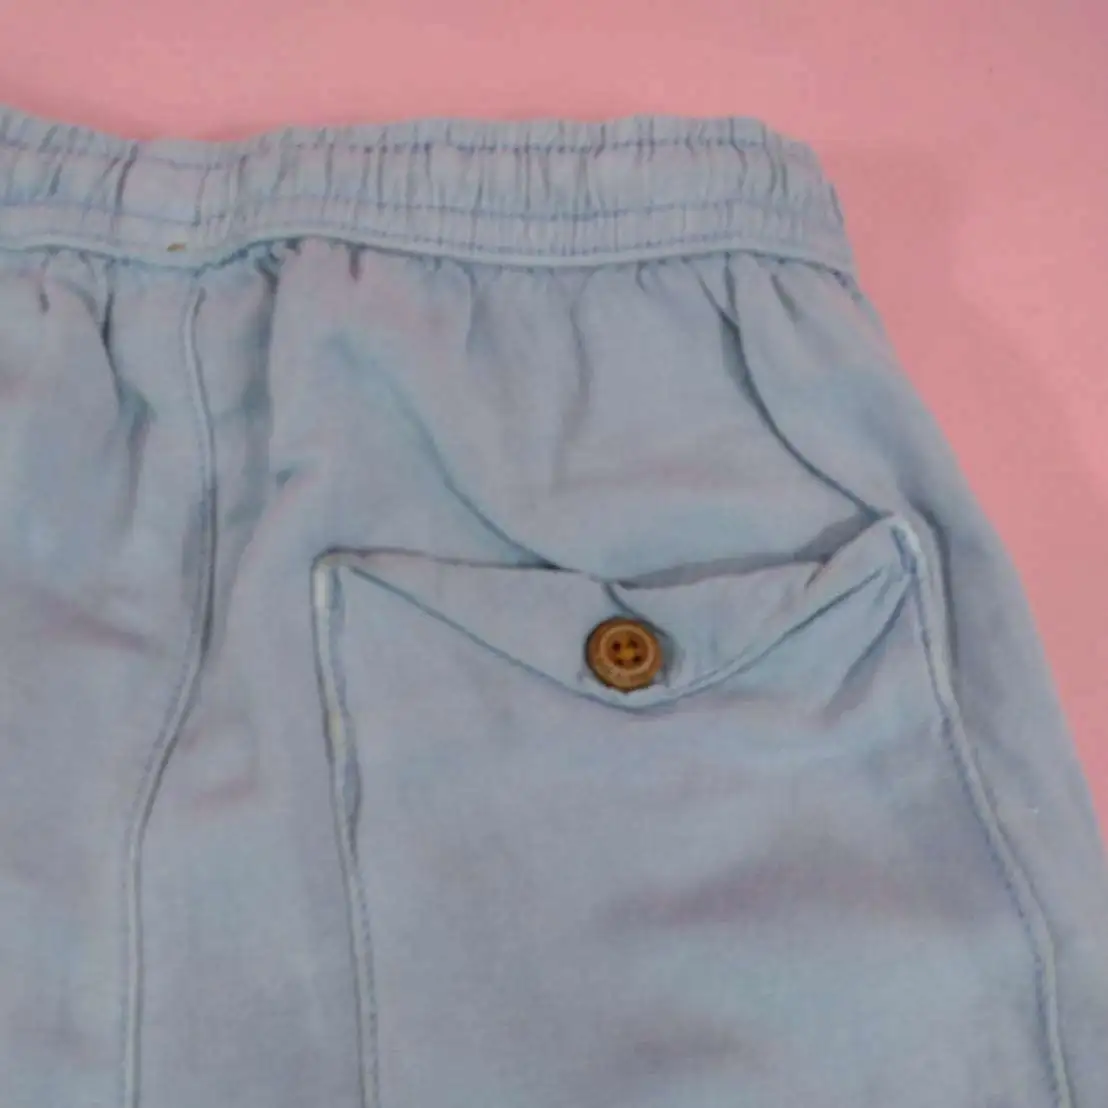 ZARA กางเกงผ้าฝ้ายขายาวสีฟ้าครามไซส์ 4-5y